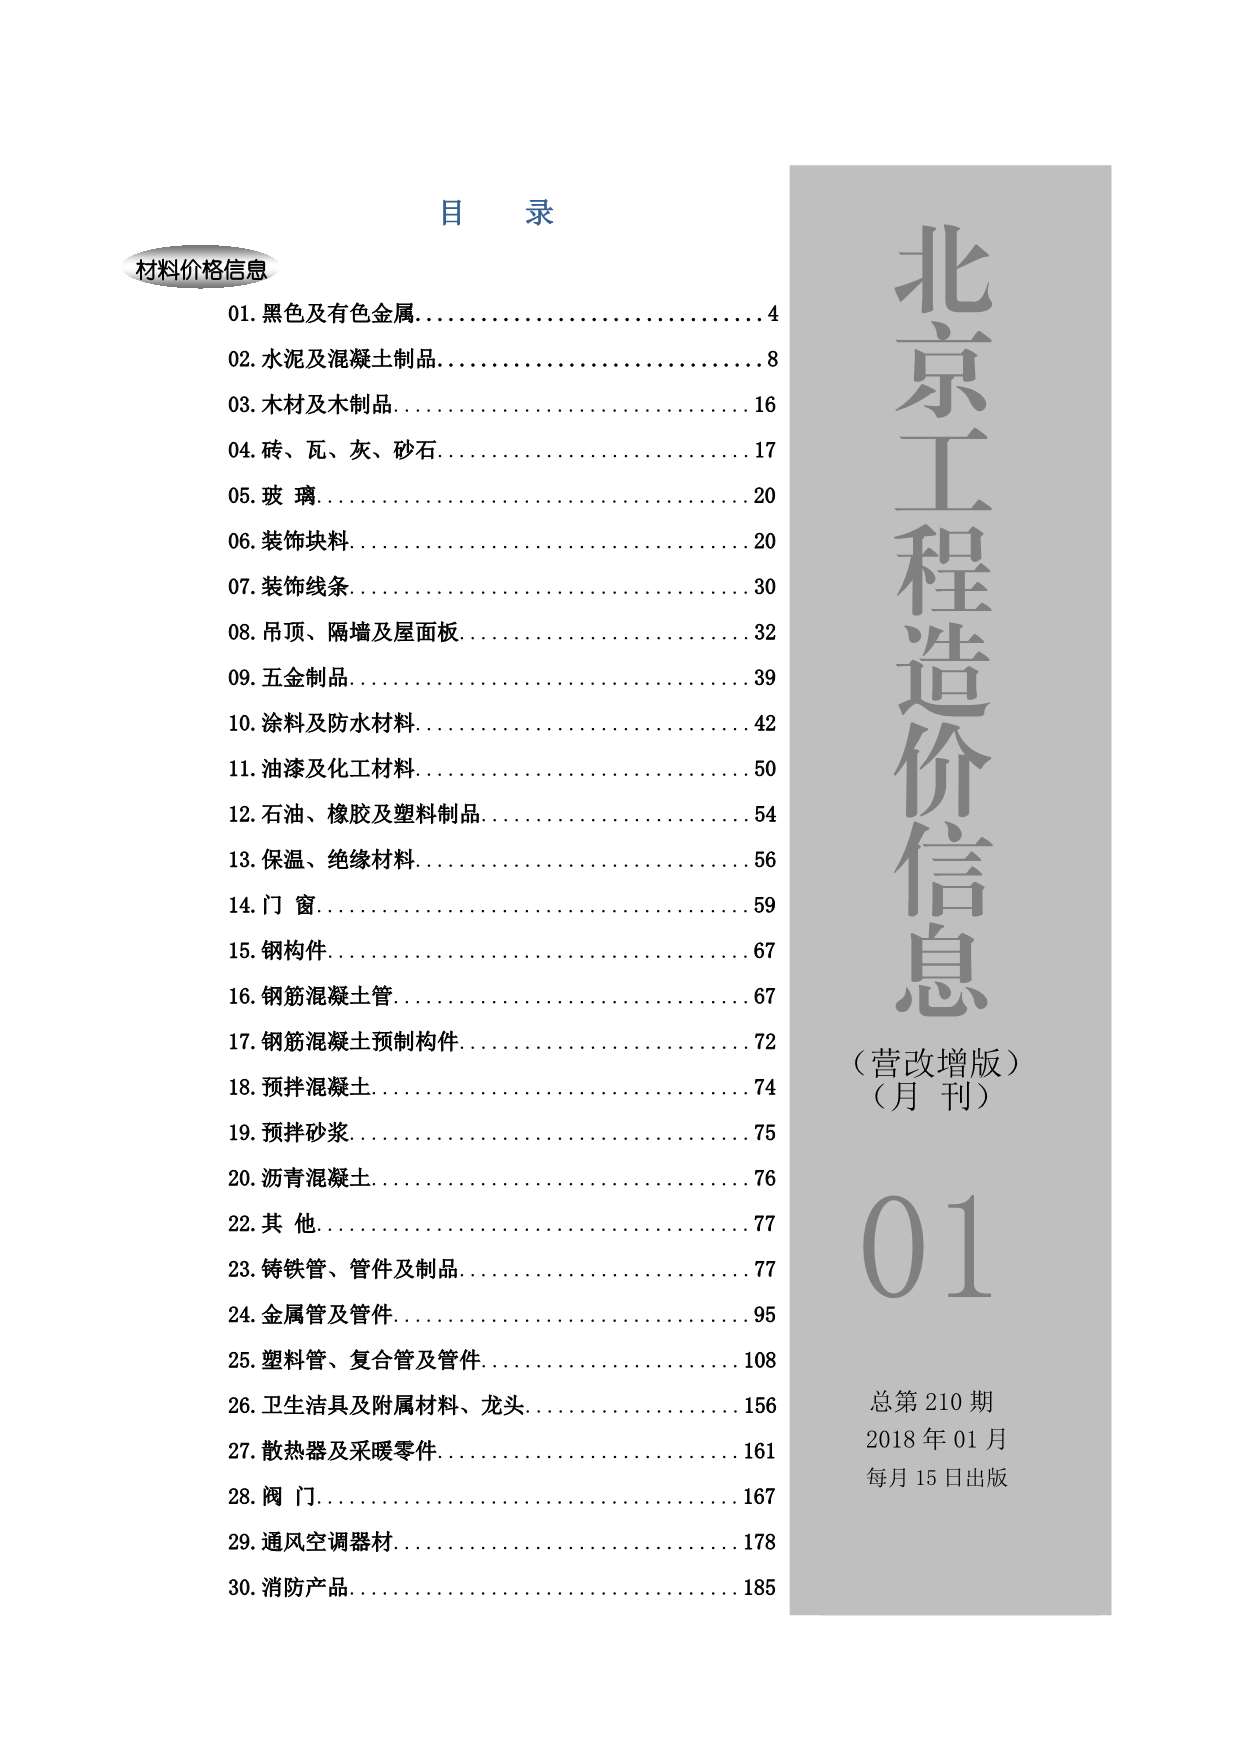 2018年1期北京营改增版造价库电子版